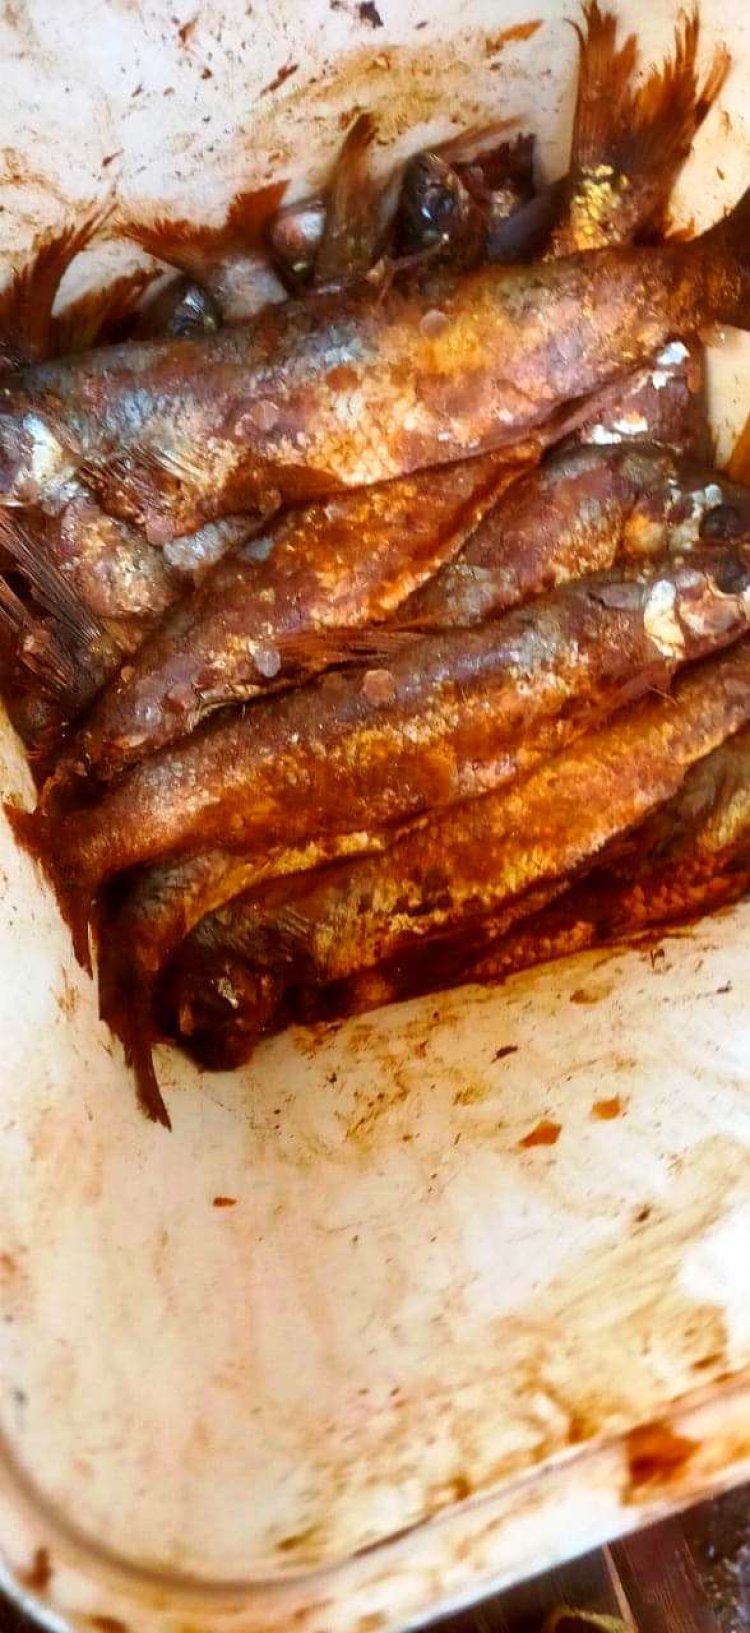 ضبط وإعدام 190 كيلو من الأسماك المملحة والحلوى غير الصالحة للاستهلاك الآدمي بمراكز سوهاج